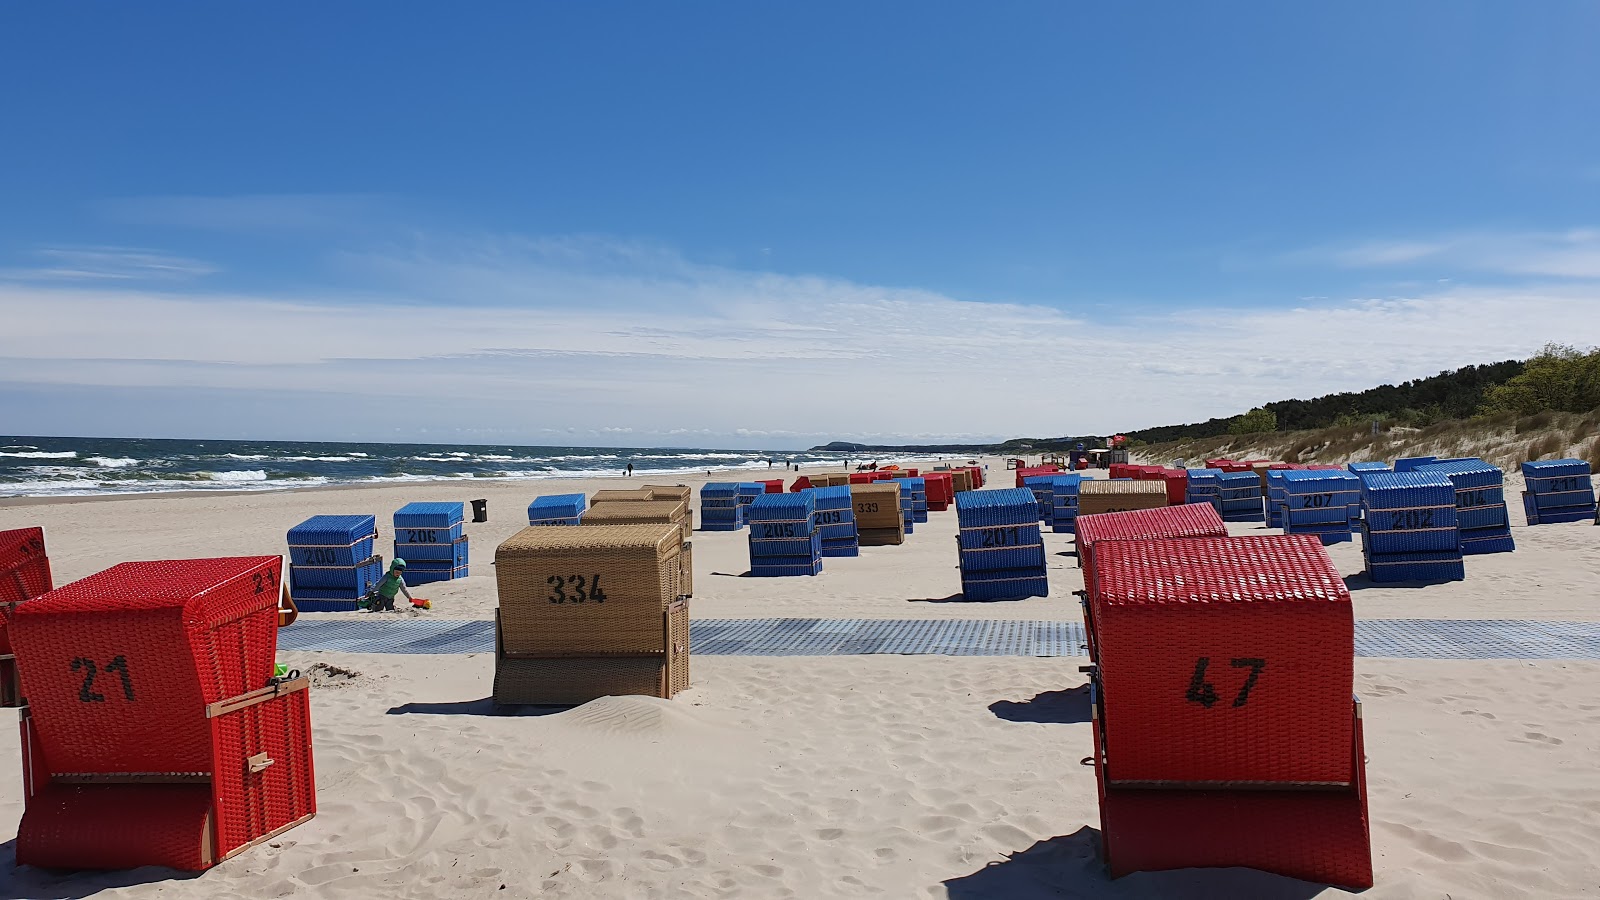 Foto de Trassenheide strand - lugar popular entre os apreciadores de relaxamento